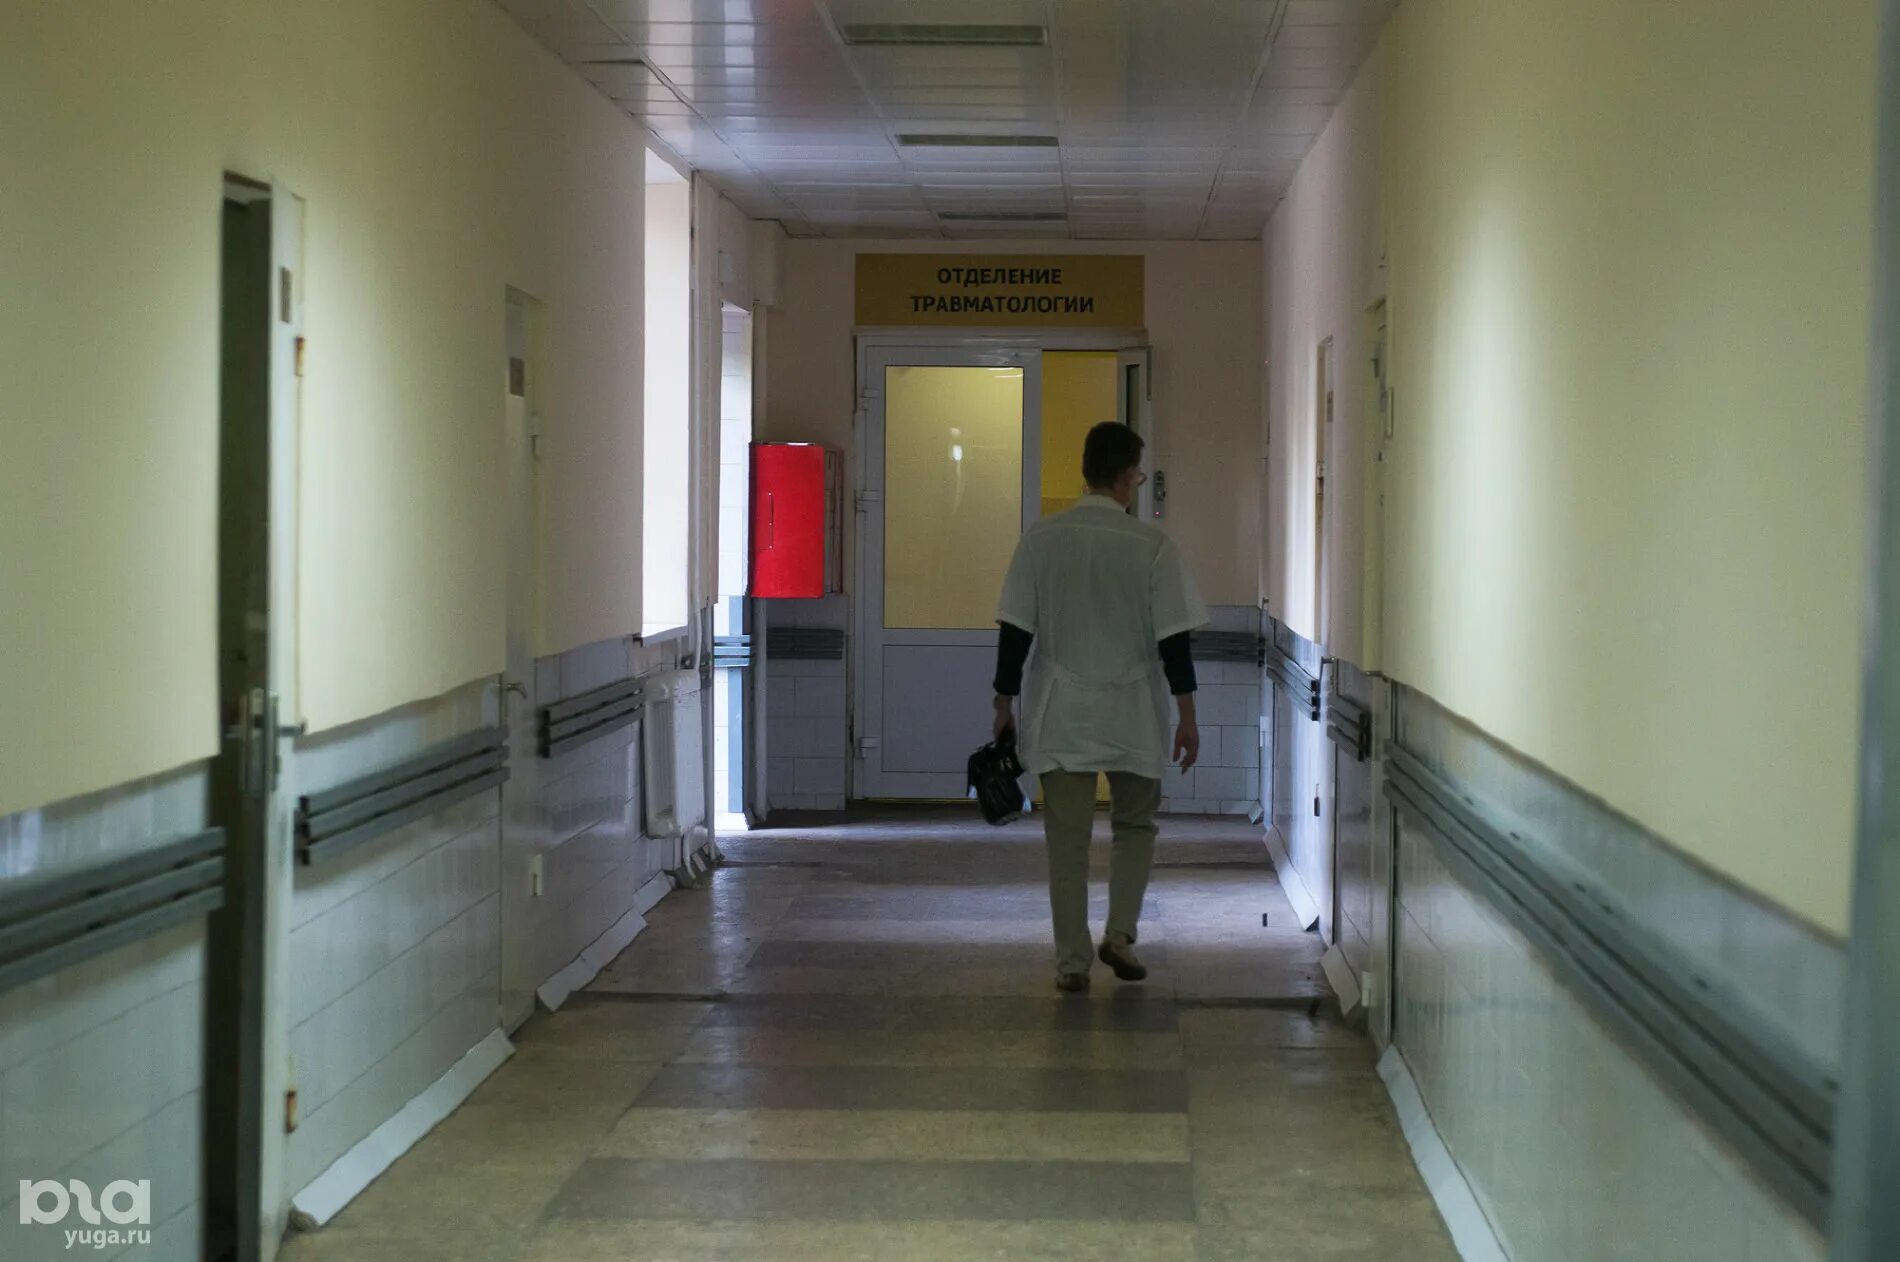 Больничный коридор. Краснодарская Центральная больница. Коридор поликлиники в Краснодаре. Коридоры больницы скорая. Сайты краснодарских больниц